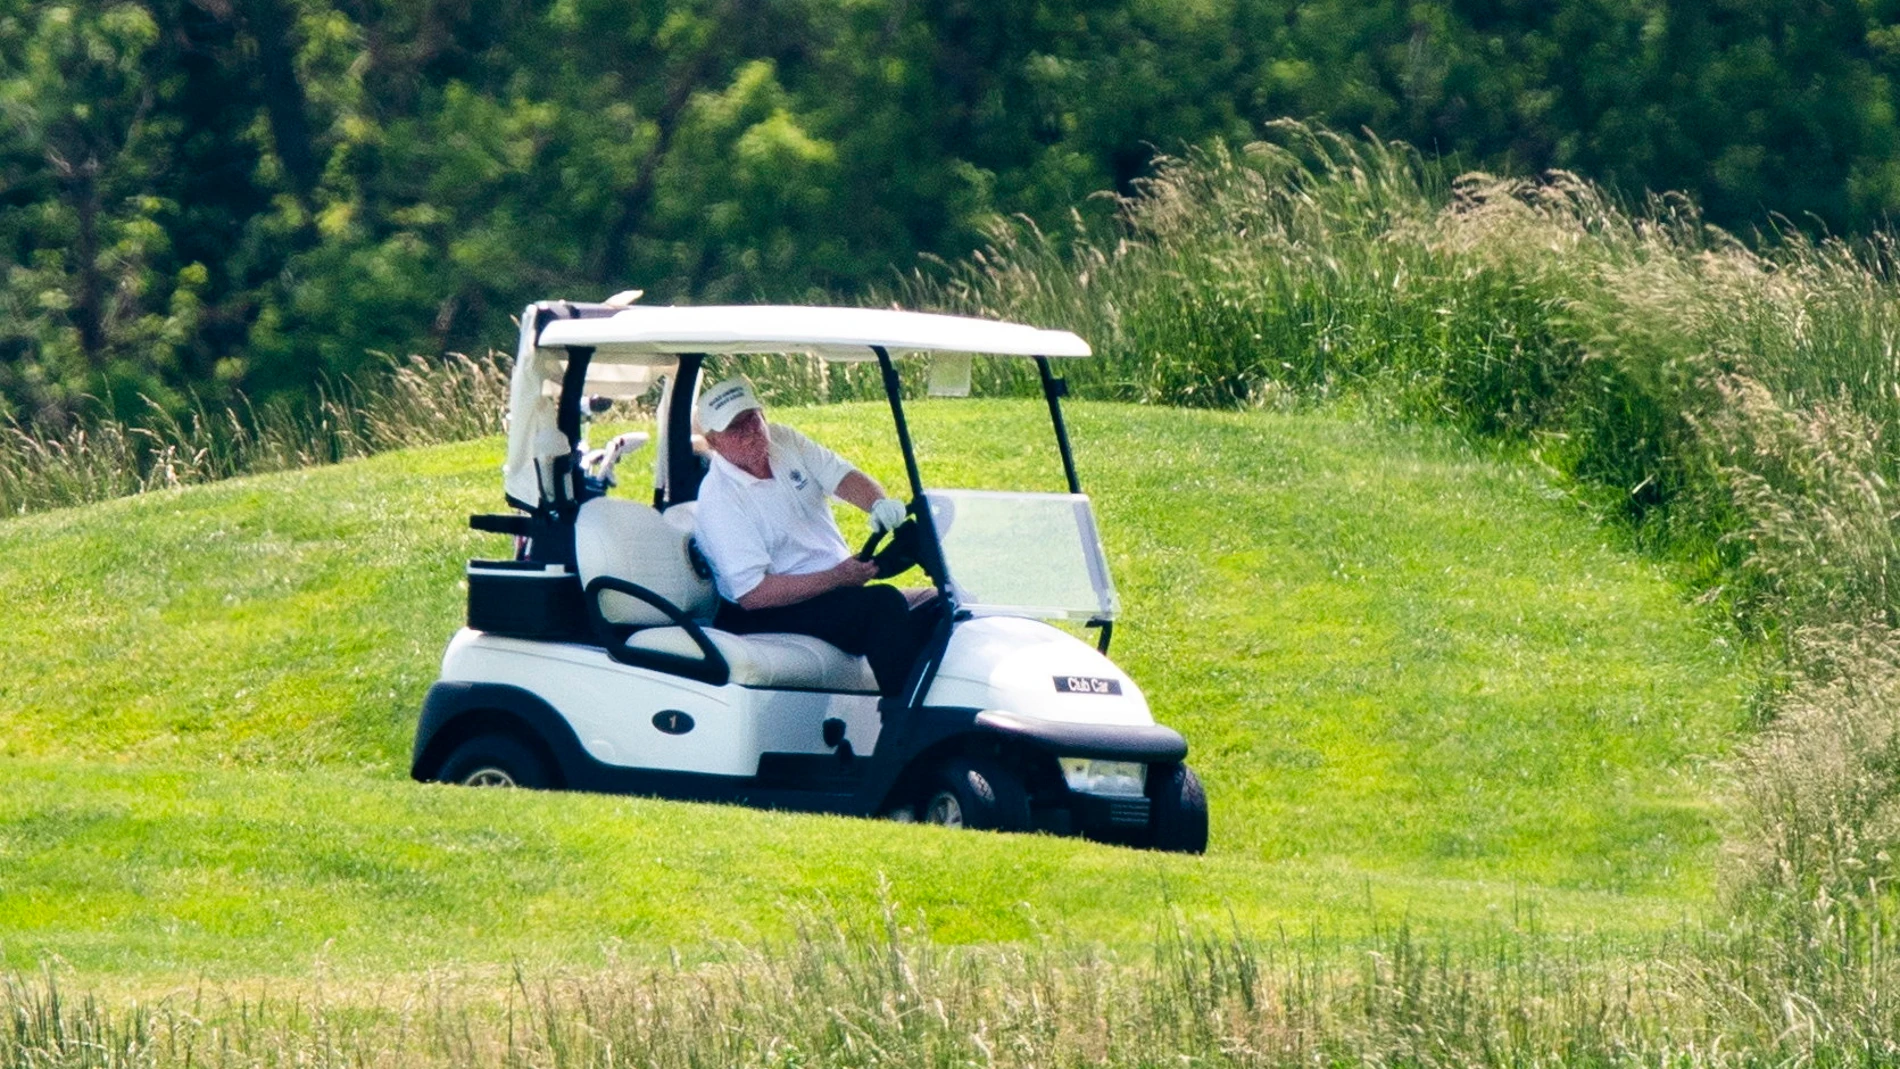 President trump plays golf in Sterling, Virginia